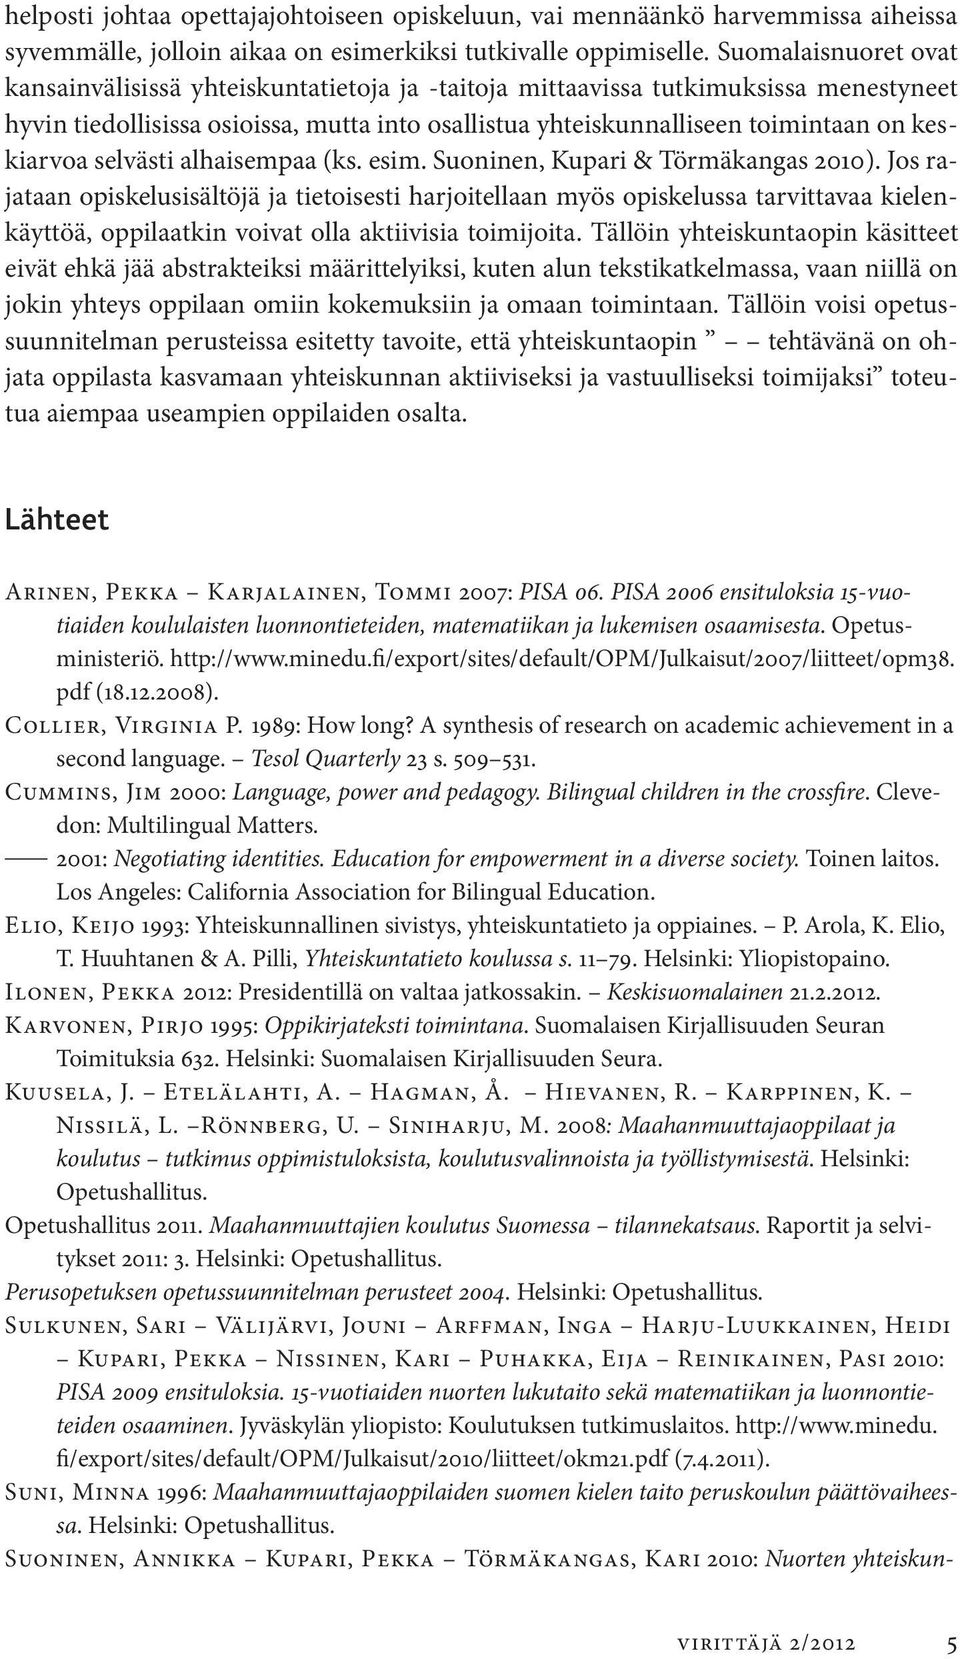 keskiarvoa selvästi alhaisempaa (ks. esim. Suoninen, Kupari & Törmäkangas 2010).